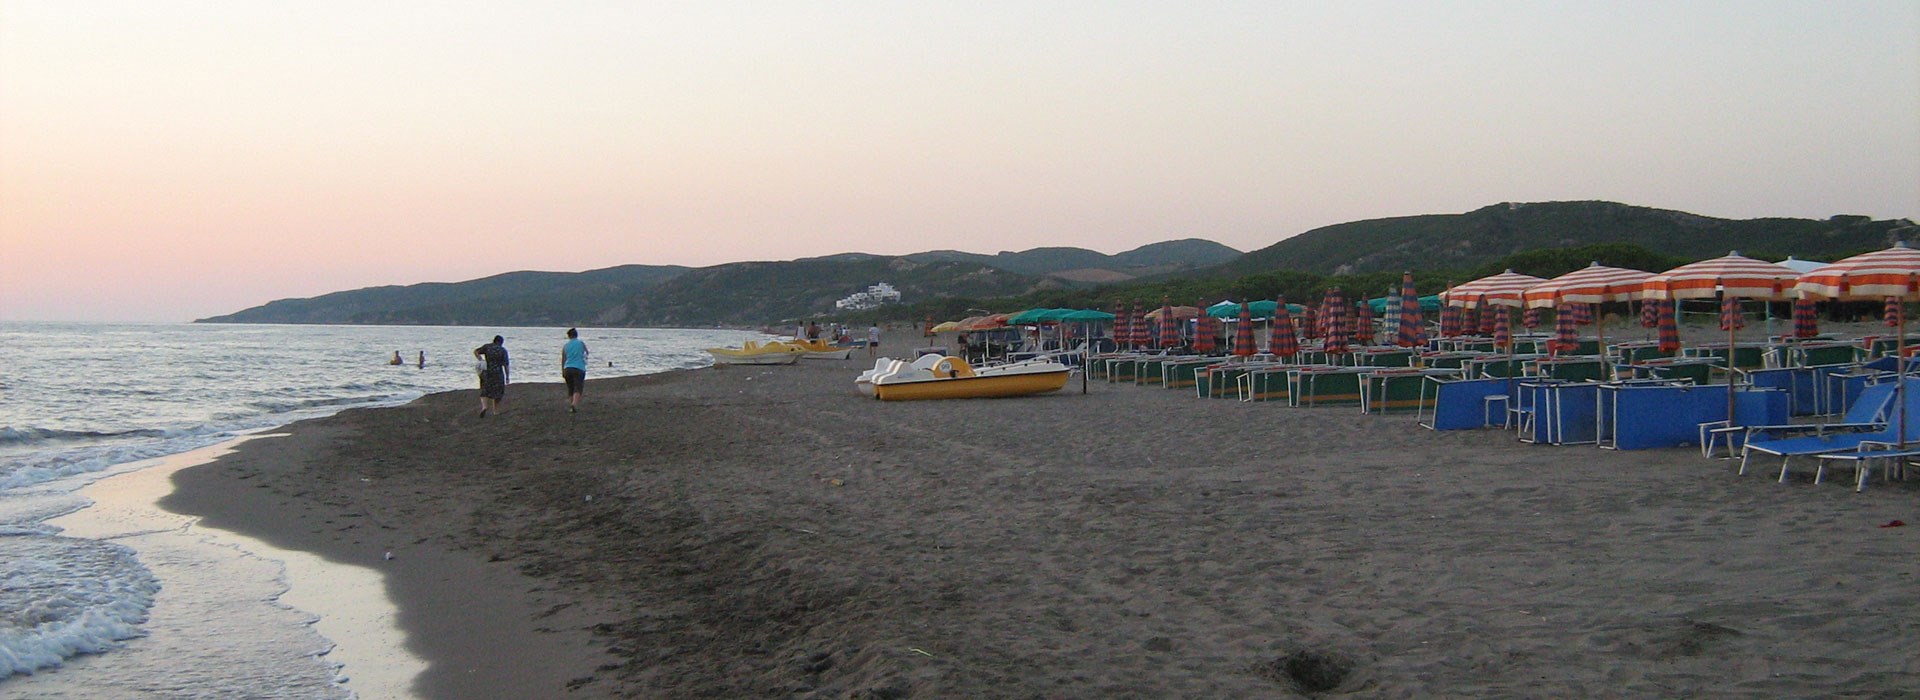 Visiter la plage de Spille - Albanie